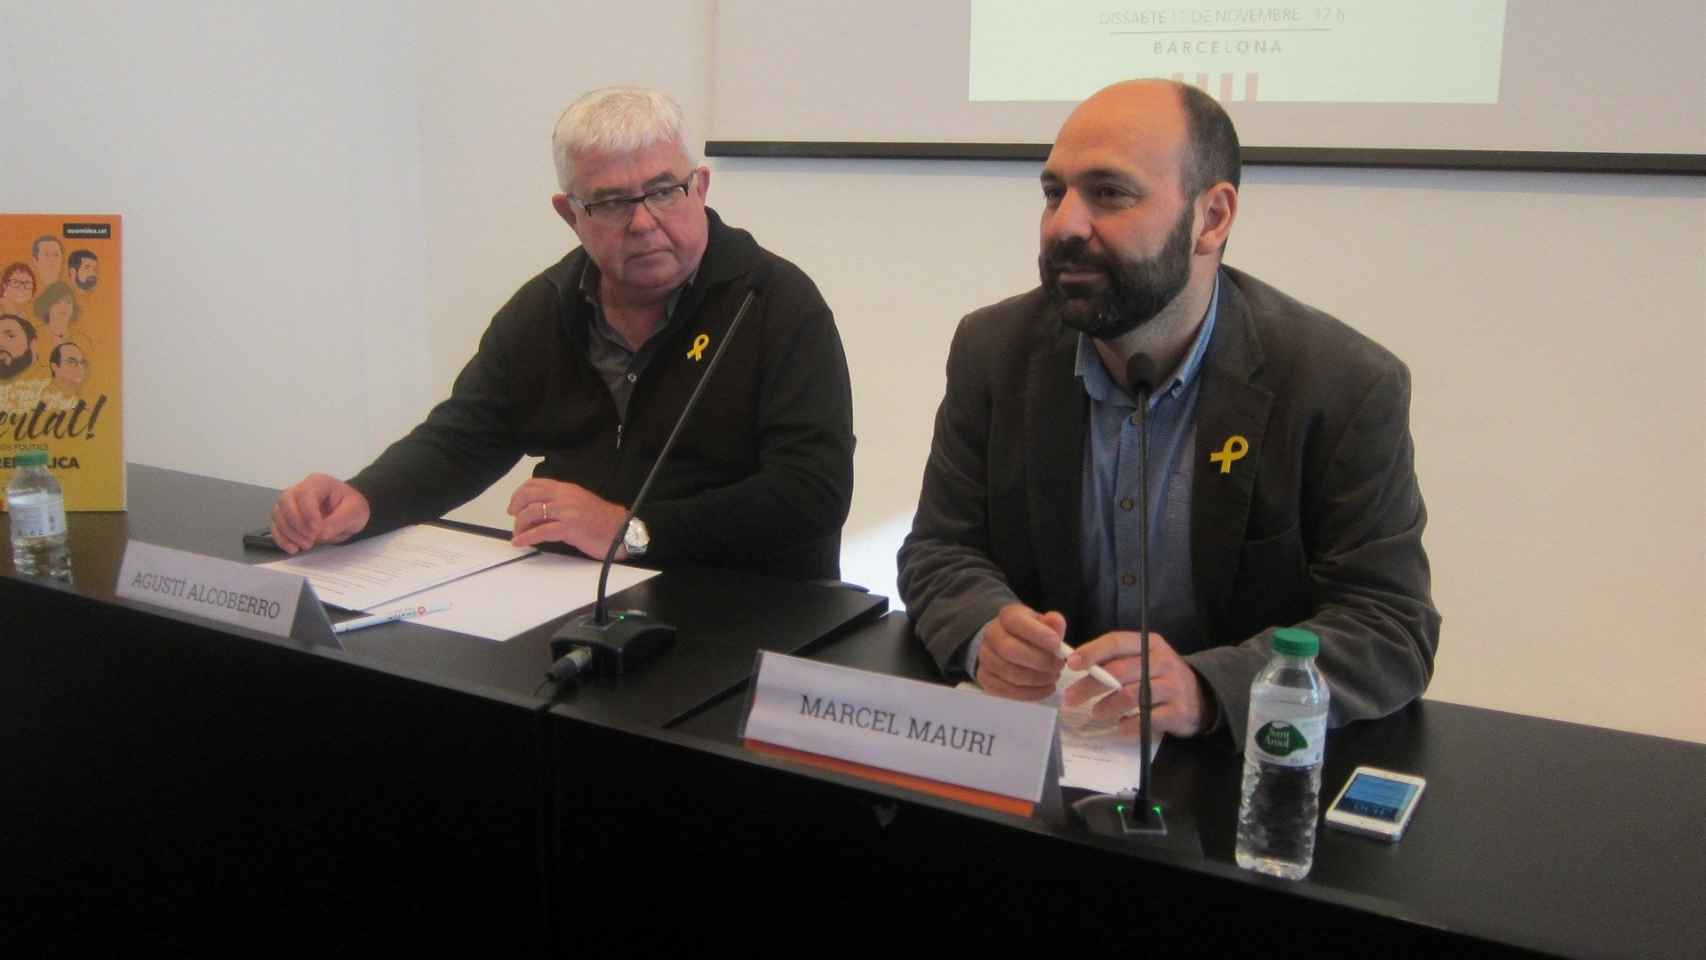 Los vicepresidentes de la ANC y Òmnium cultural, Agustí Alcoberro y Marcel Mauri, en la presentación de los detalles de la manifestación del 11 de noviembre / EP